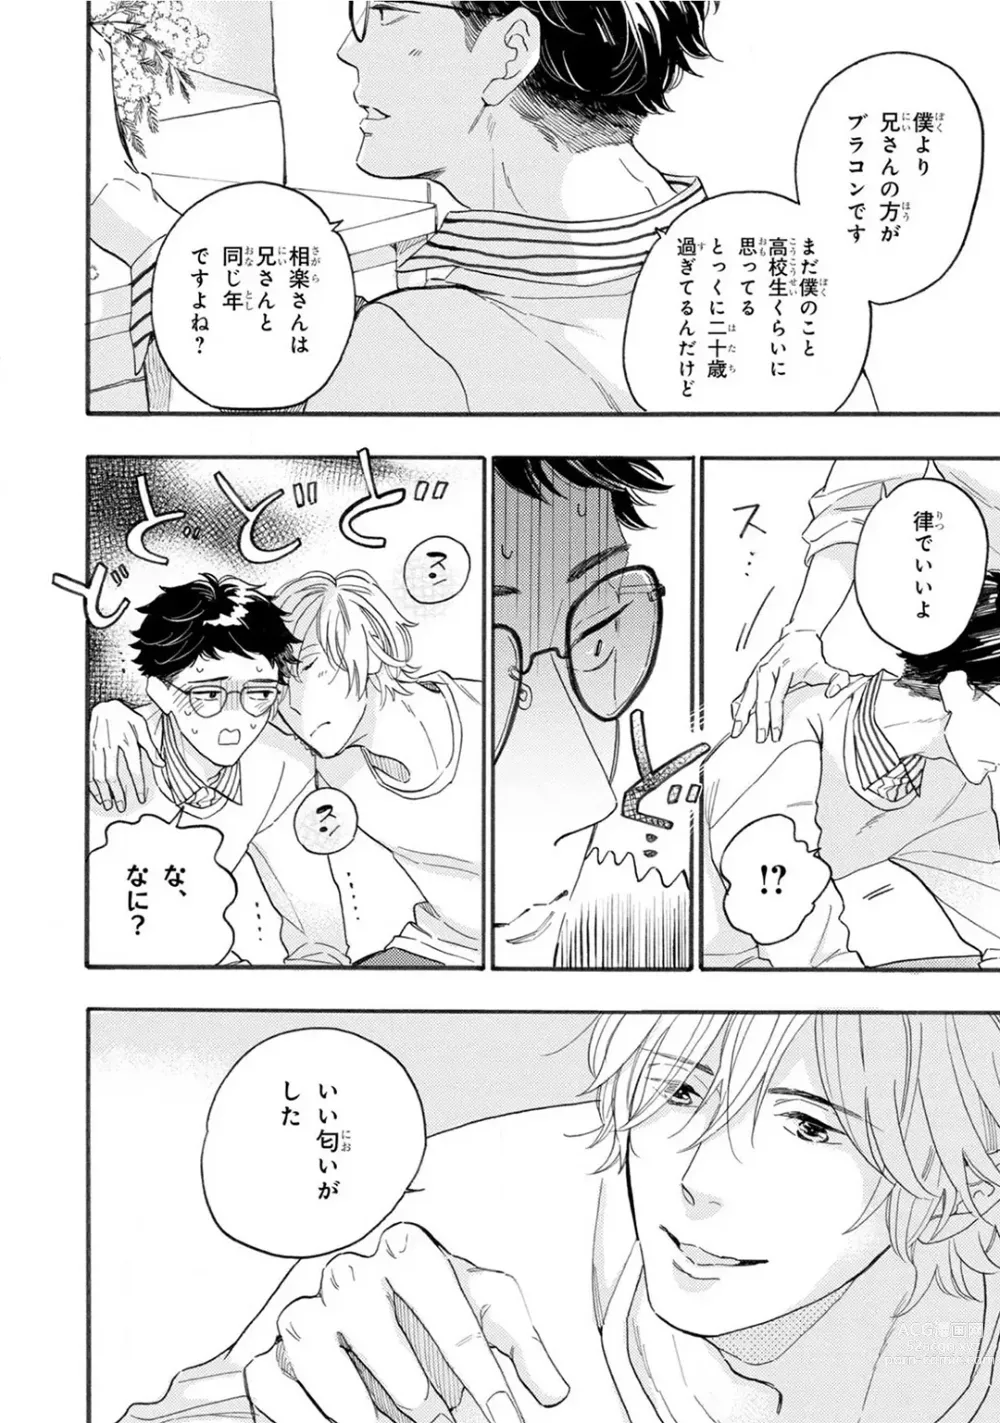 Page 14 of manga Boku no Muse - My muse